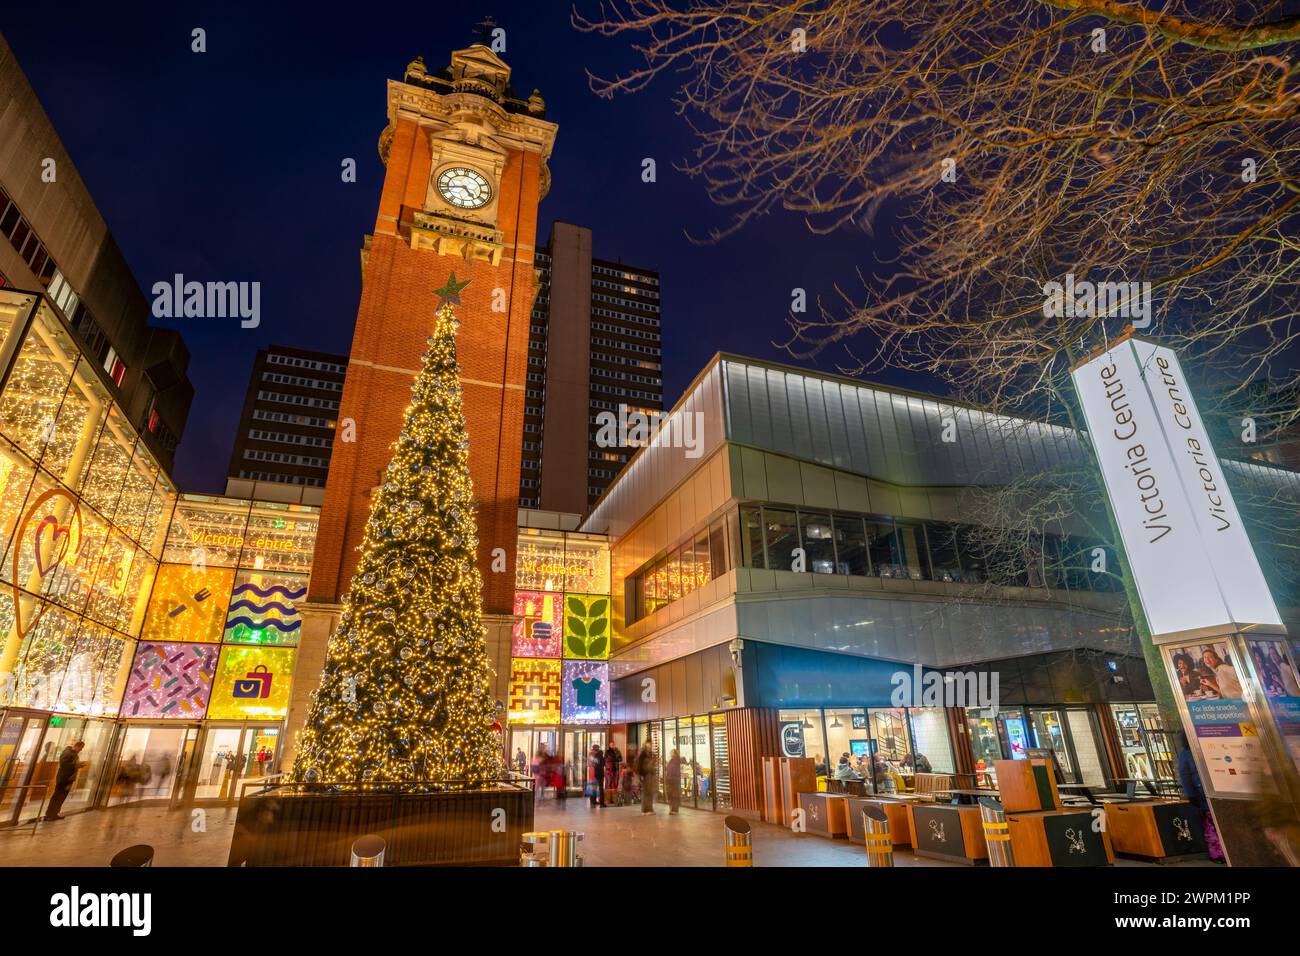 Vue de Victoria Station Clock Tower et arbre de Noël au crépuscule, Nottingham, Nottinghamshire, Angleterre, Royaume-Uni, Europe Banque D'Images